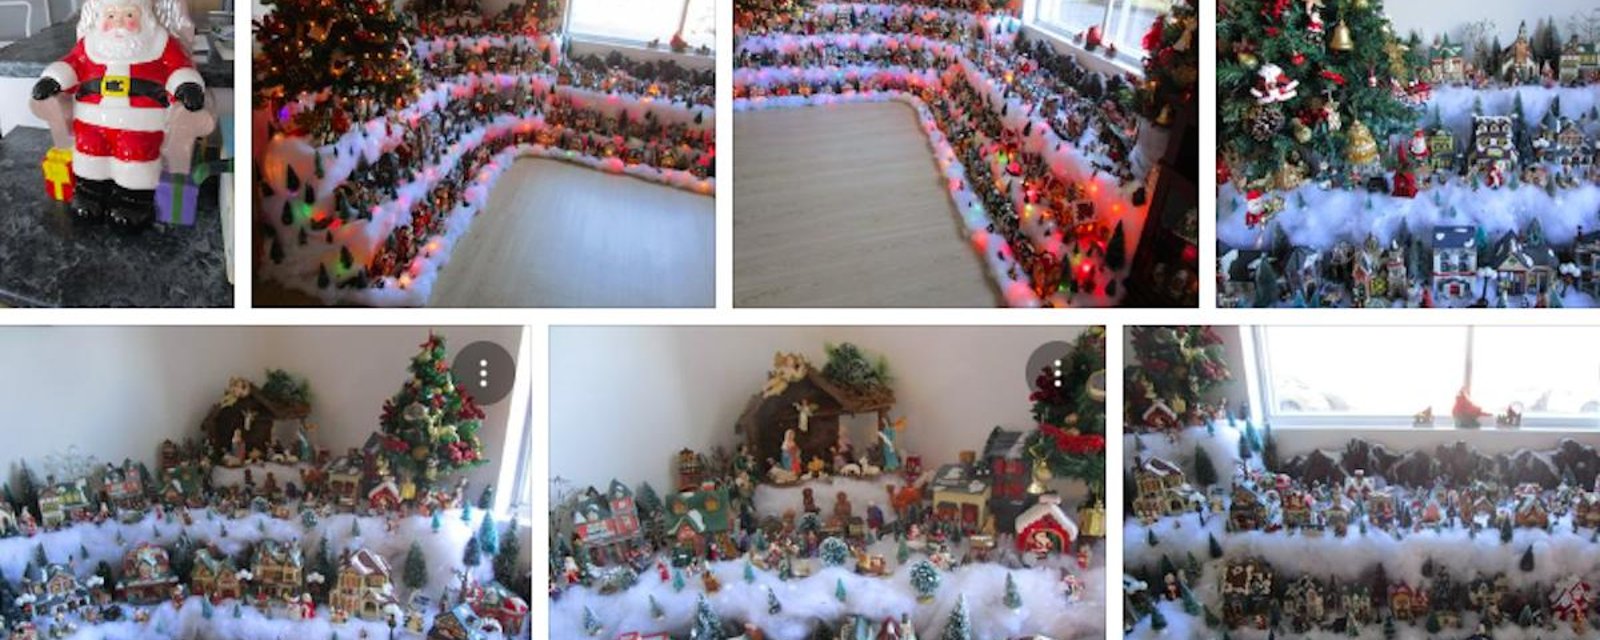 Cette Québécoise est certainement une des plus grandes passionnées de Noël! Son énorme village en témoigne.